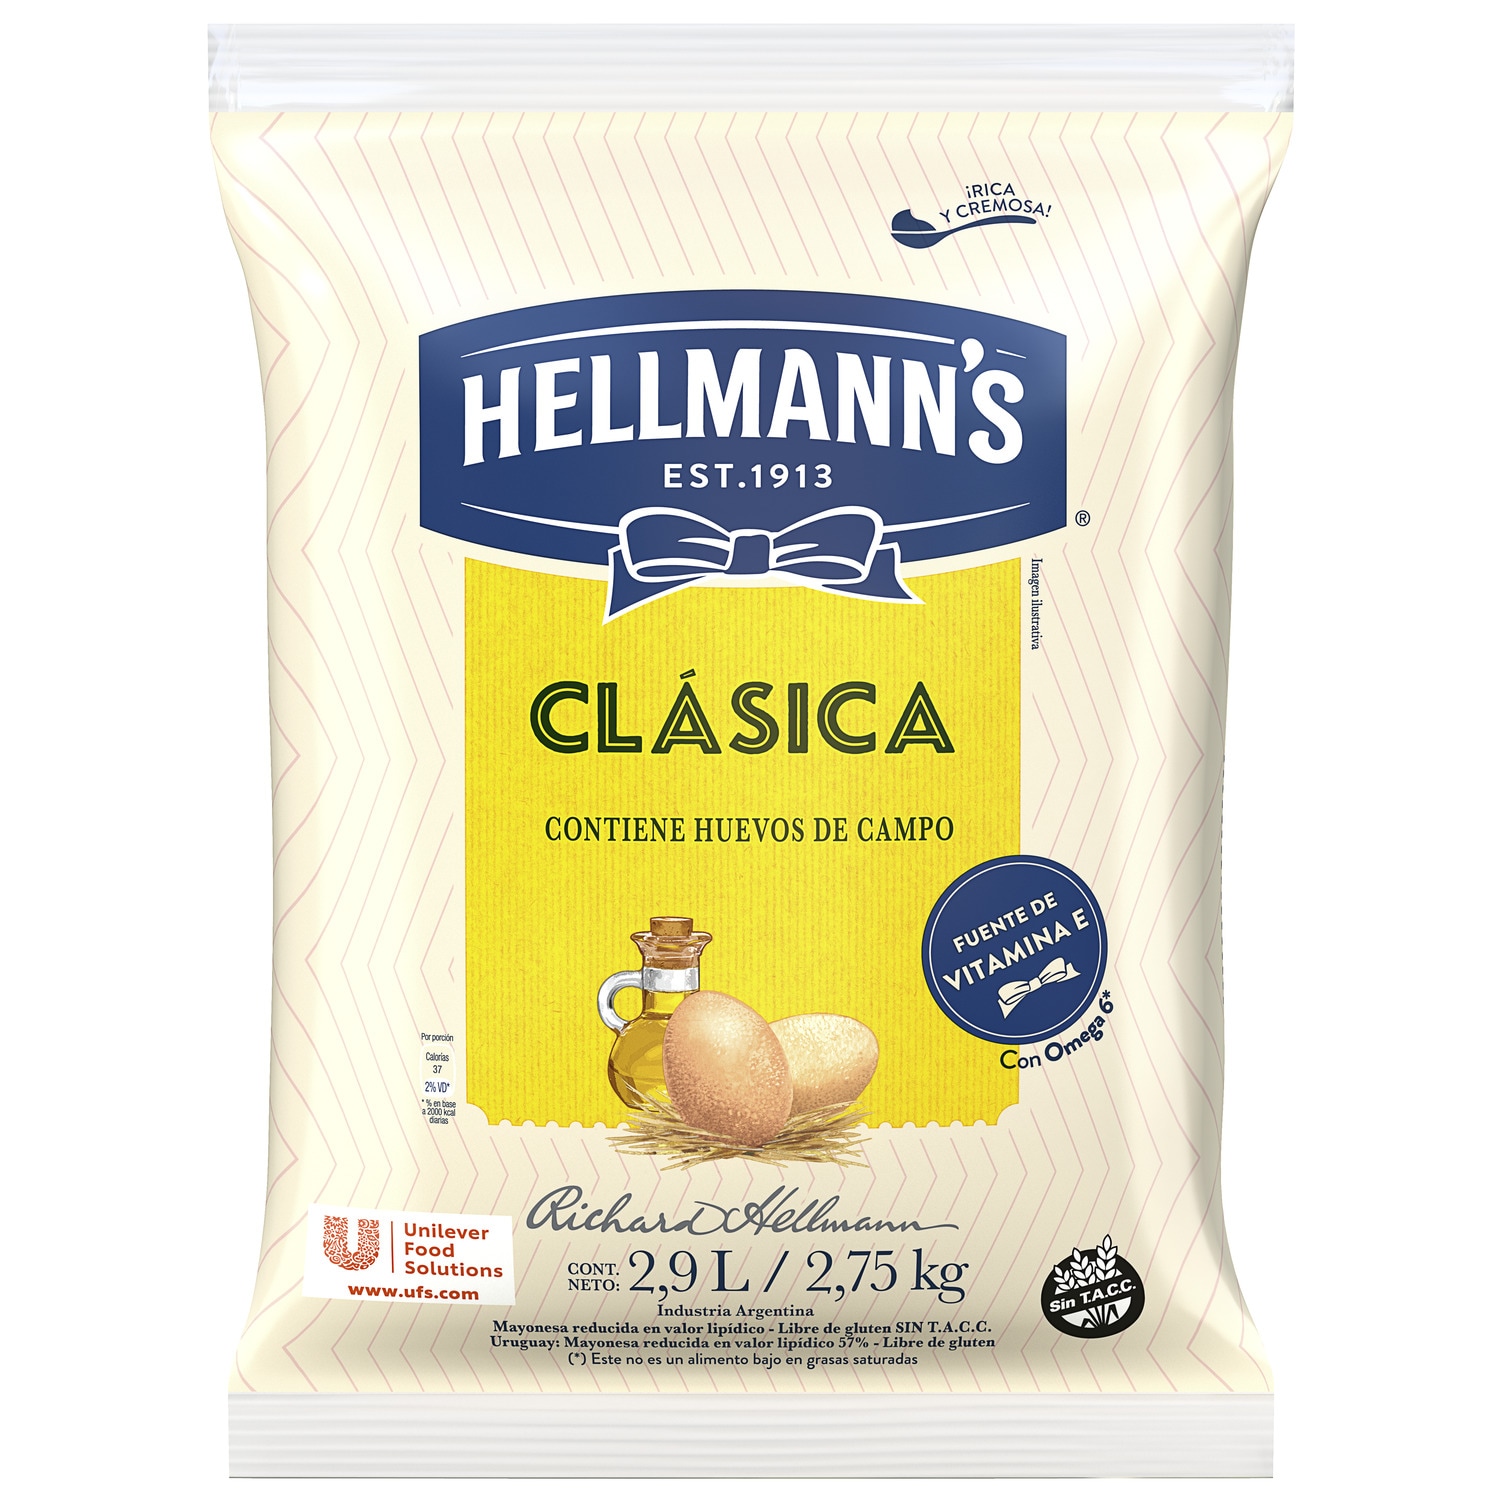 Mayonesa Clásica Hellmann's 3x2.755 KG - Proba el irresistible sabor de Hellmann's, ahora con huevos de campo y aceite de origen sustentable.